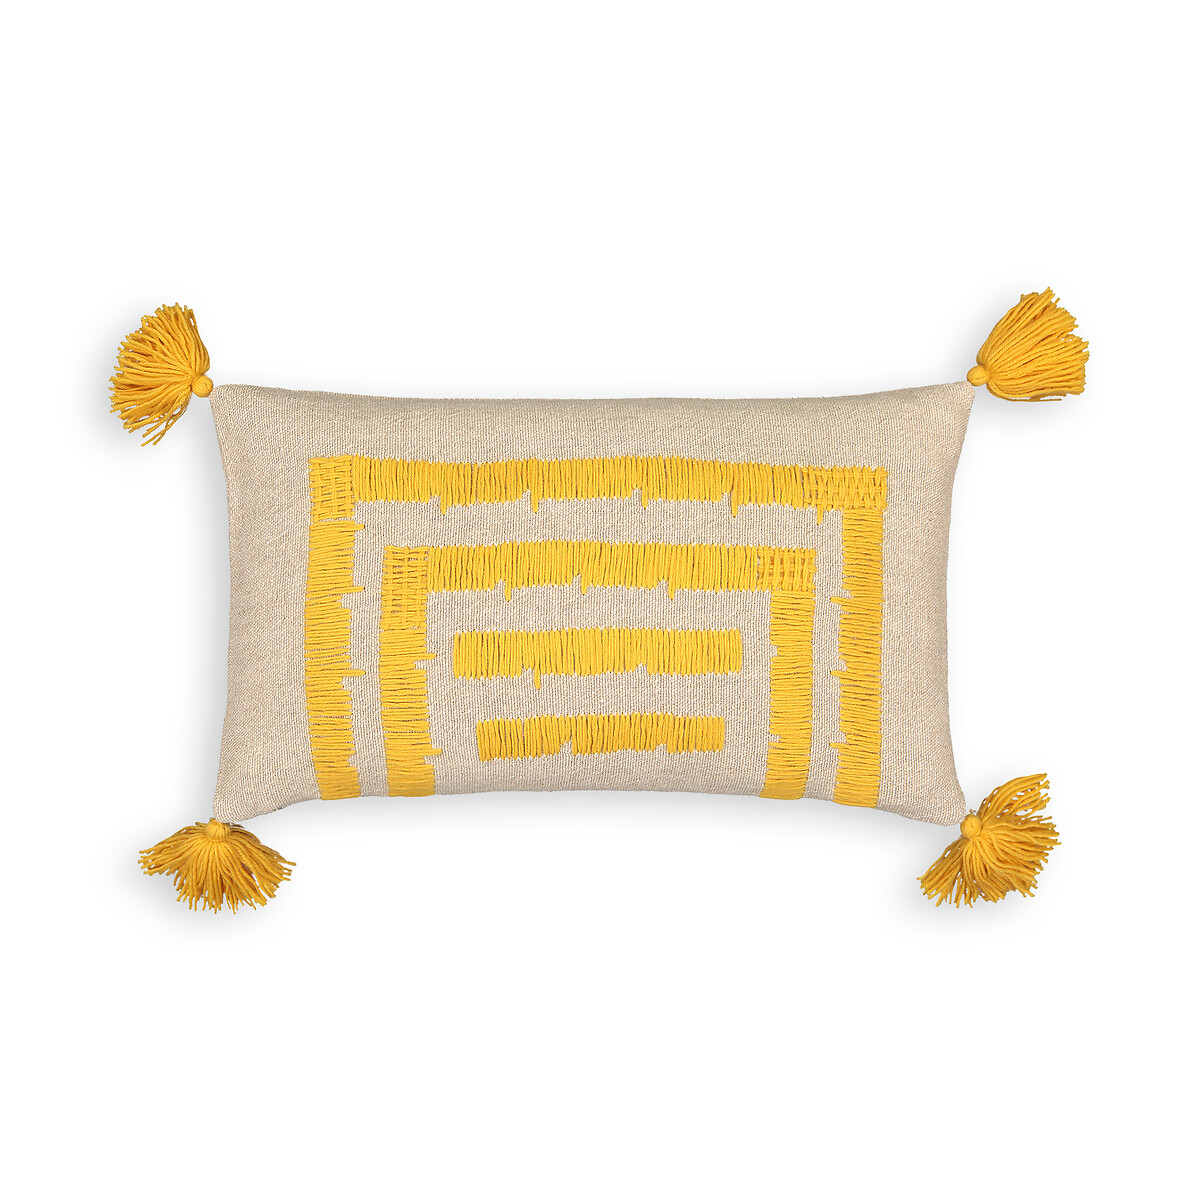 Чехол На подушку из льна и хлопка Riscaya 50 x 30 см желтый